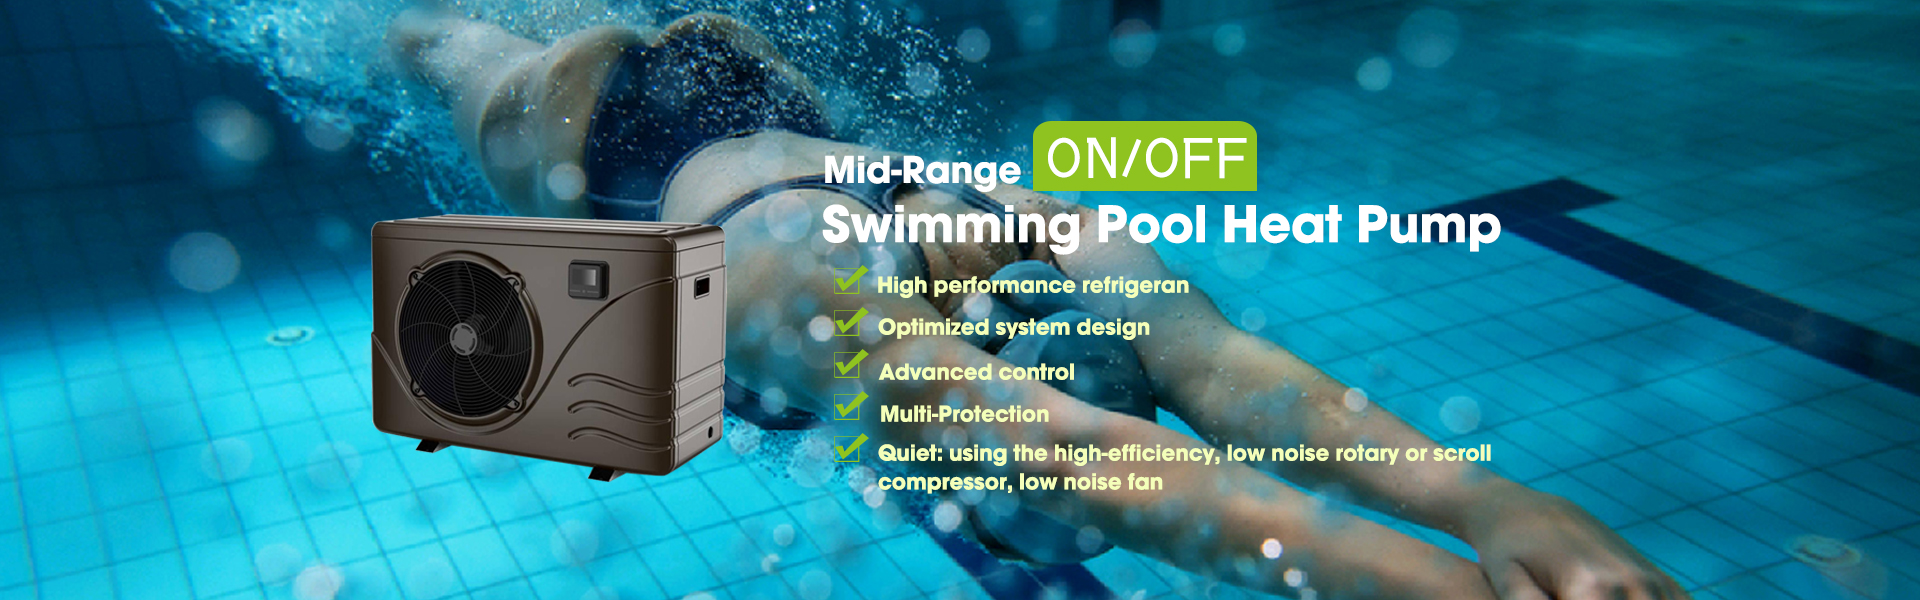 Mid-range ON/OFF Swimming Pool Heat Pump